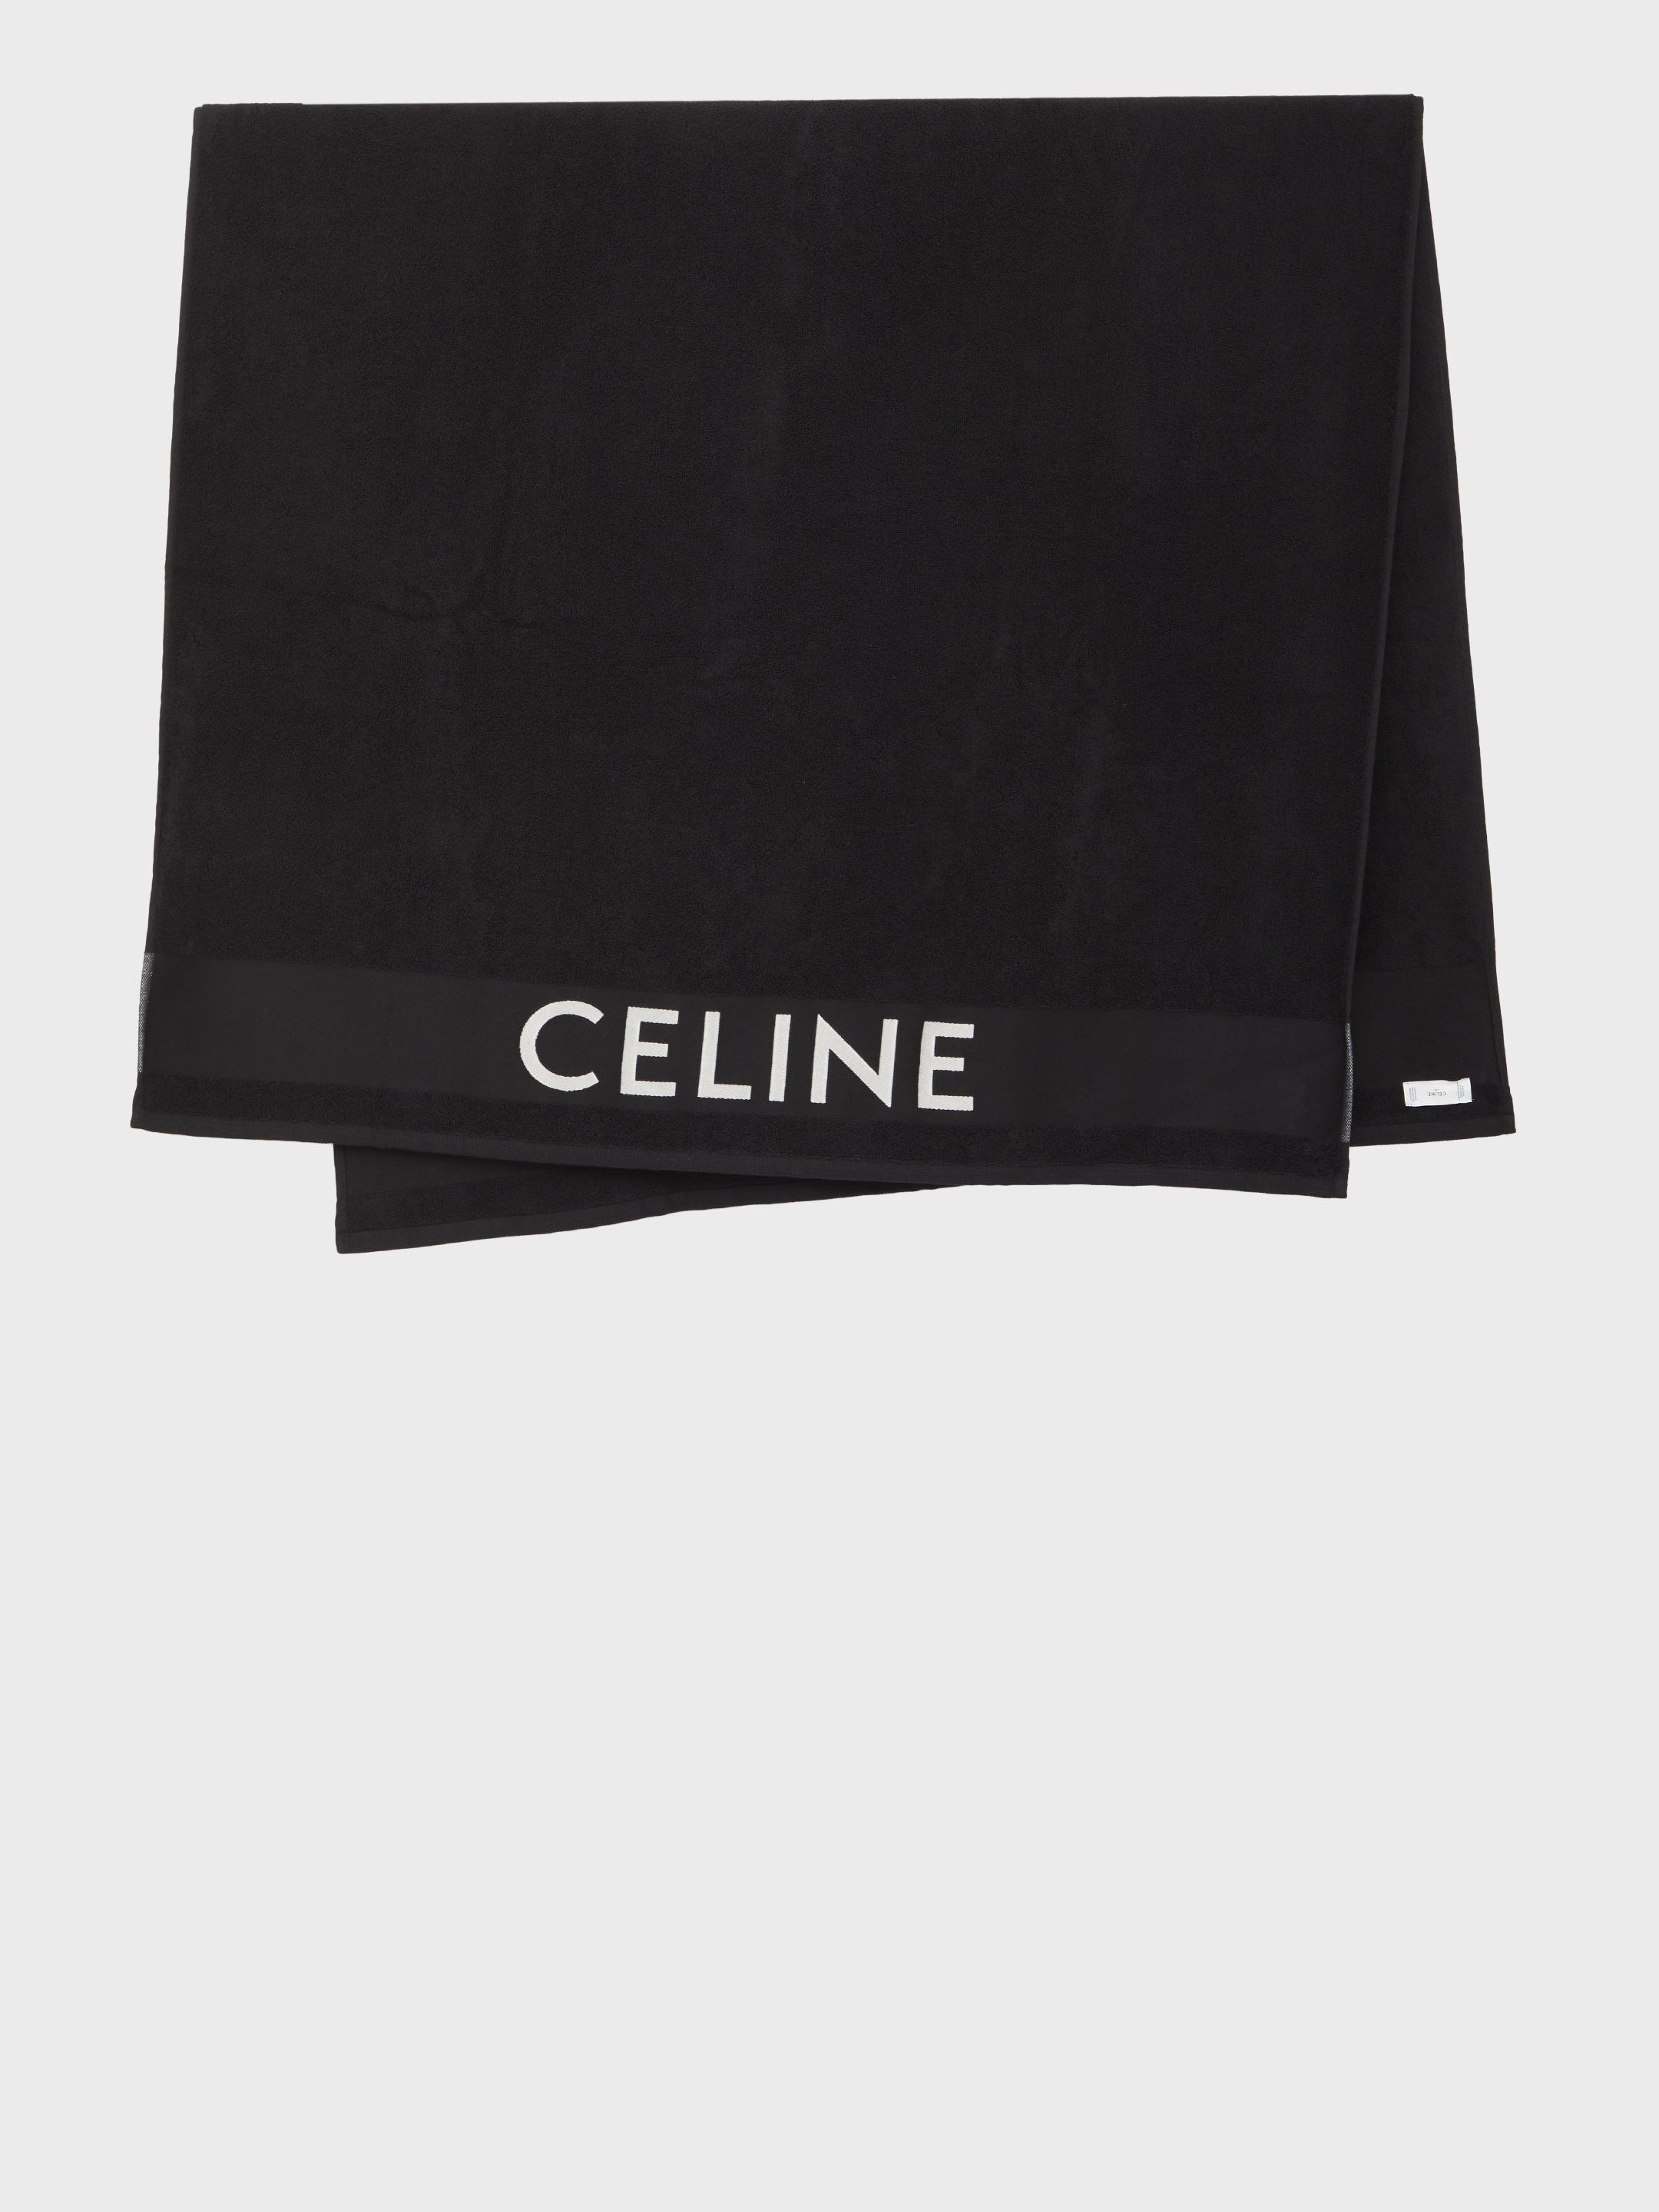 CELINE-OUTLET-SALE-Celine-beach-towel-Accessoires-QT-BLACK-ARCHIVE-COLLECTION.jpg